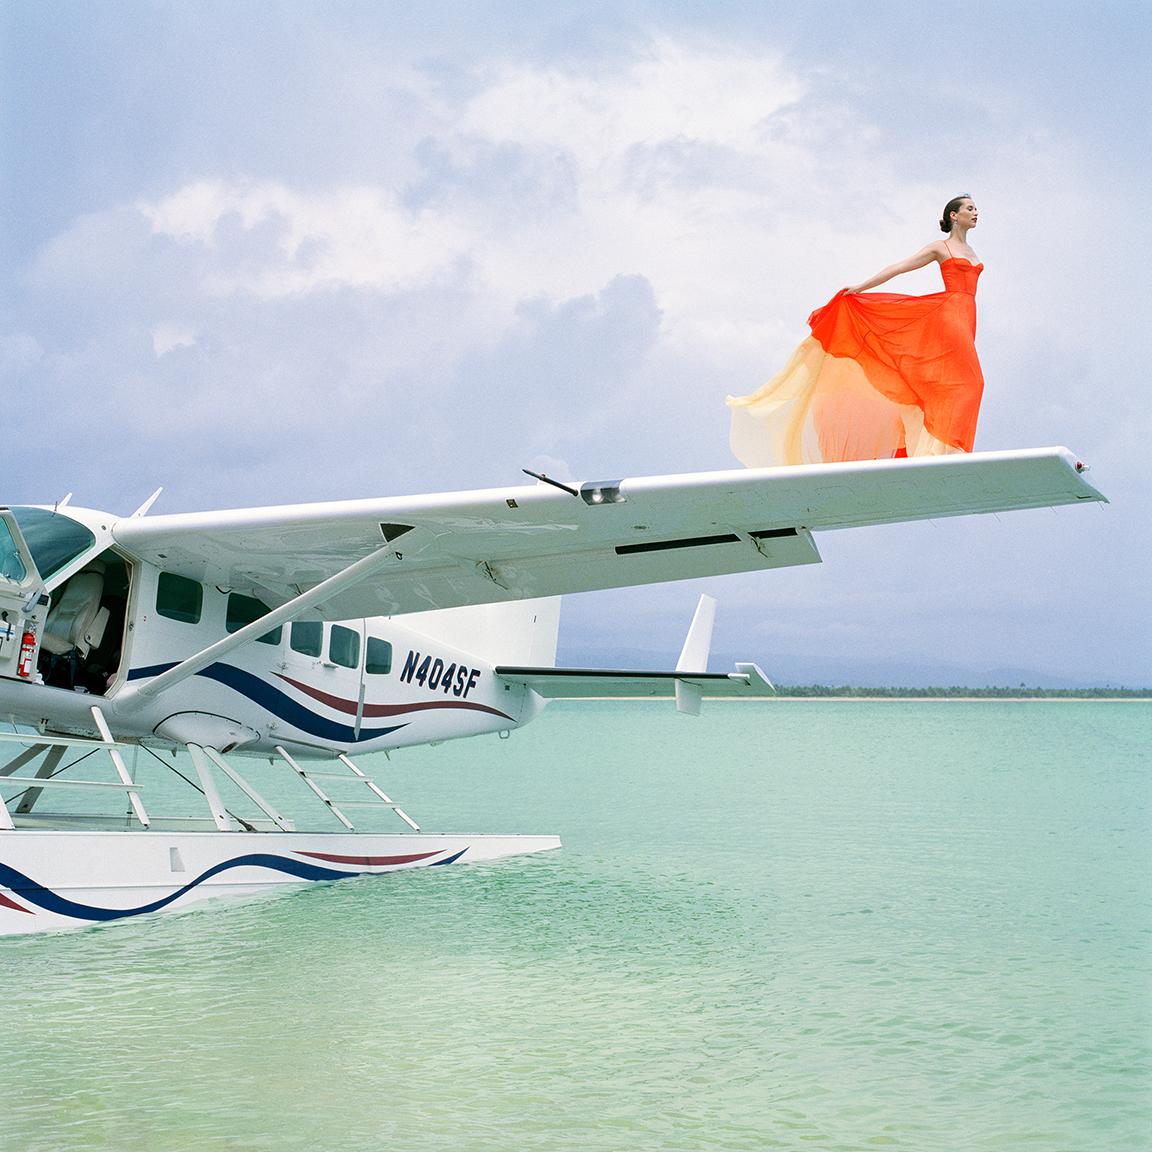 Rodney Smith Color Photograph - Saori on Sea Plane Wing No. 2, Dominican Republic, 2010